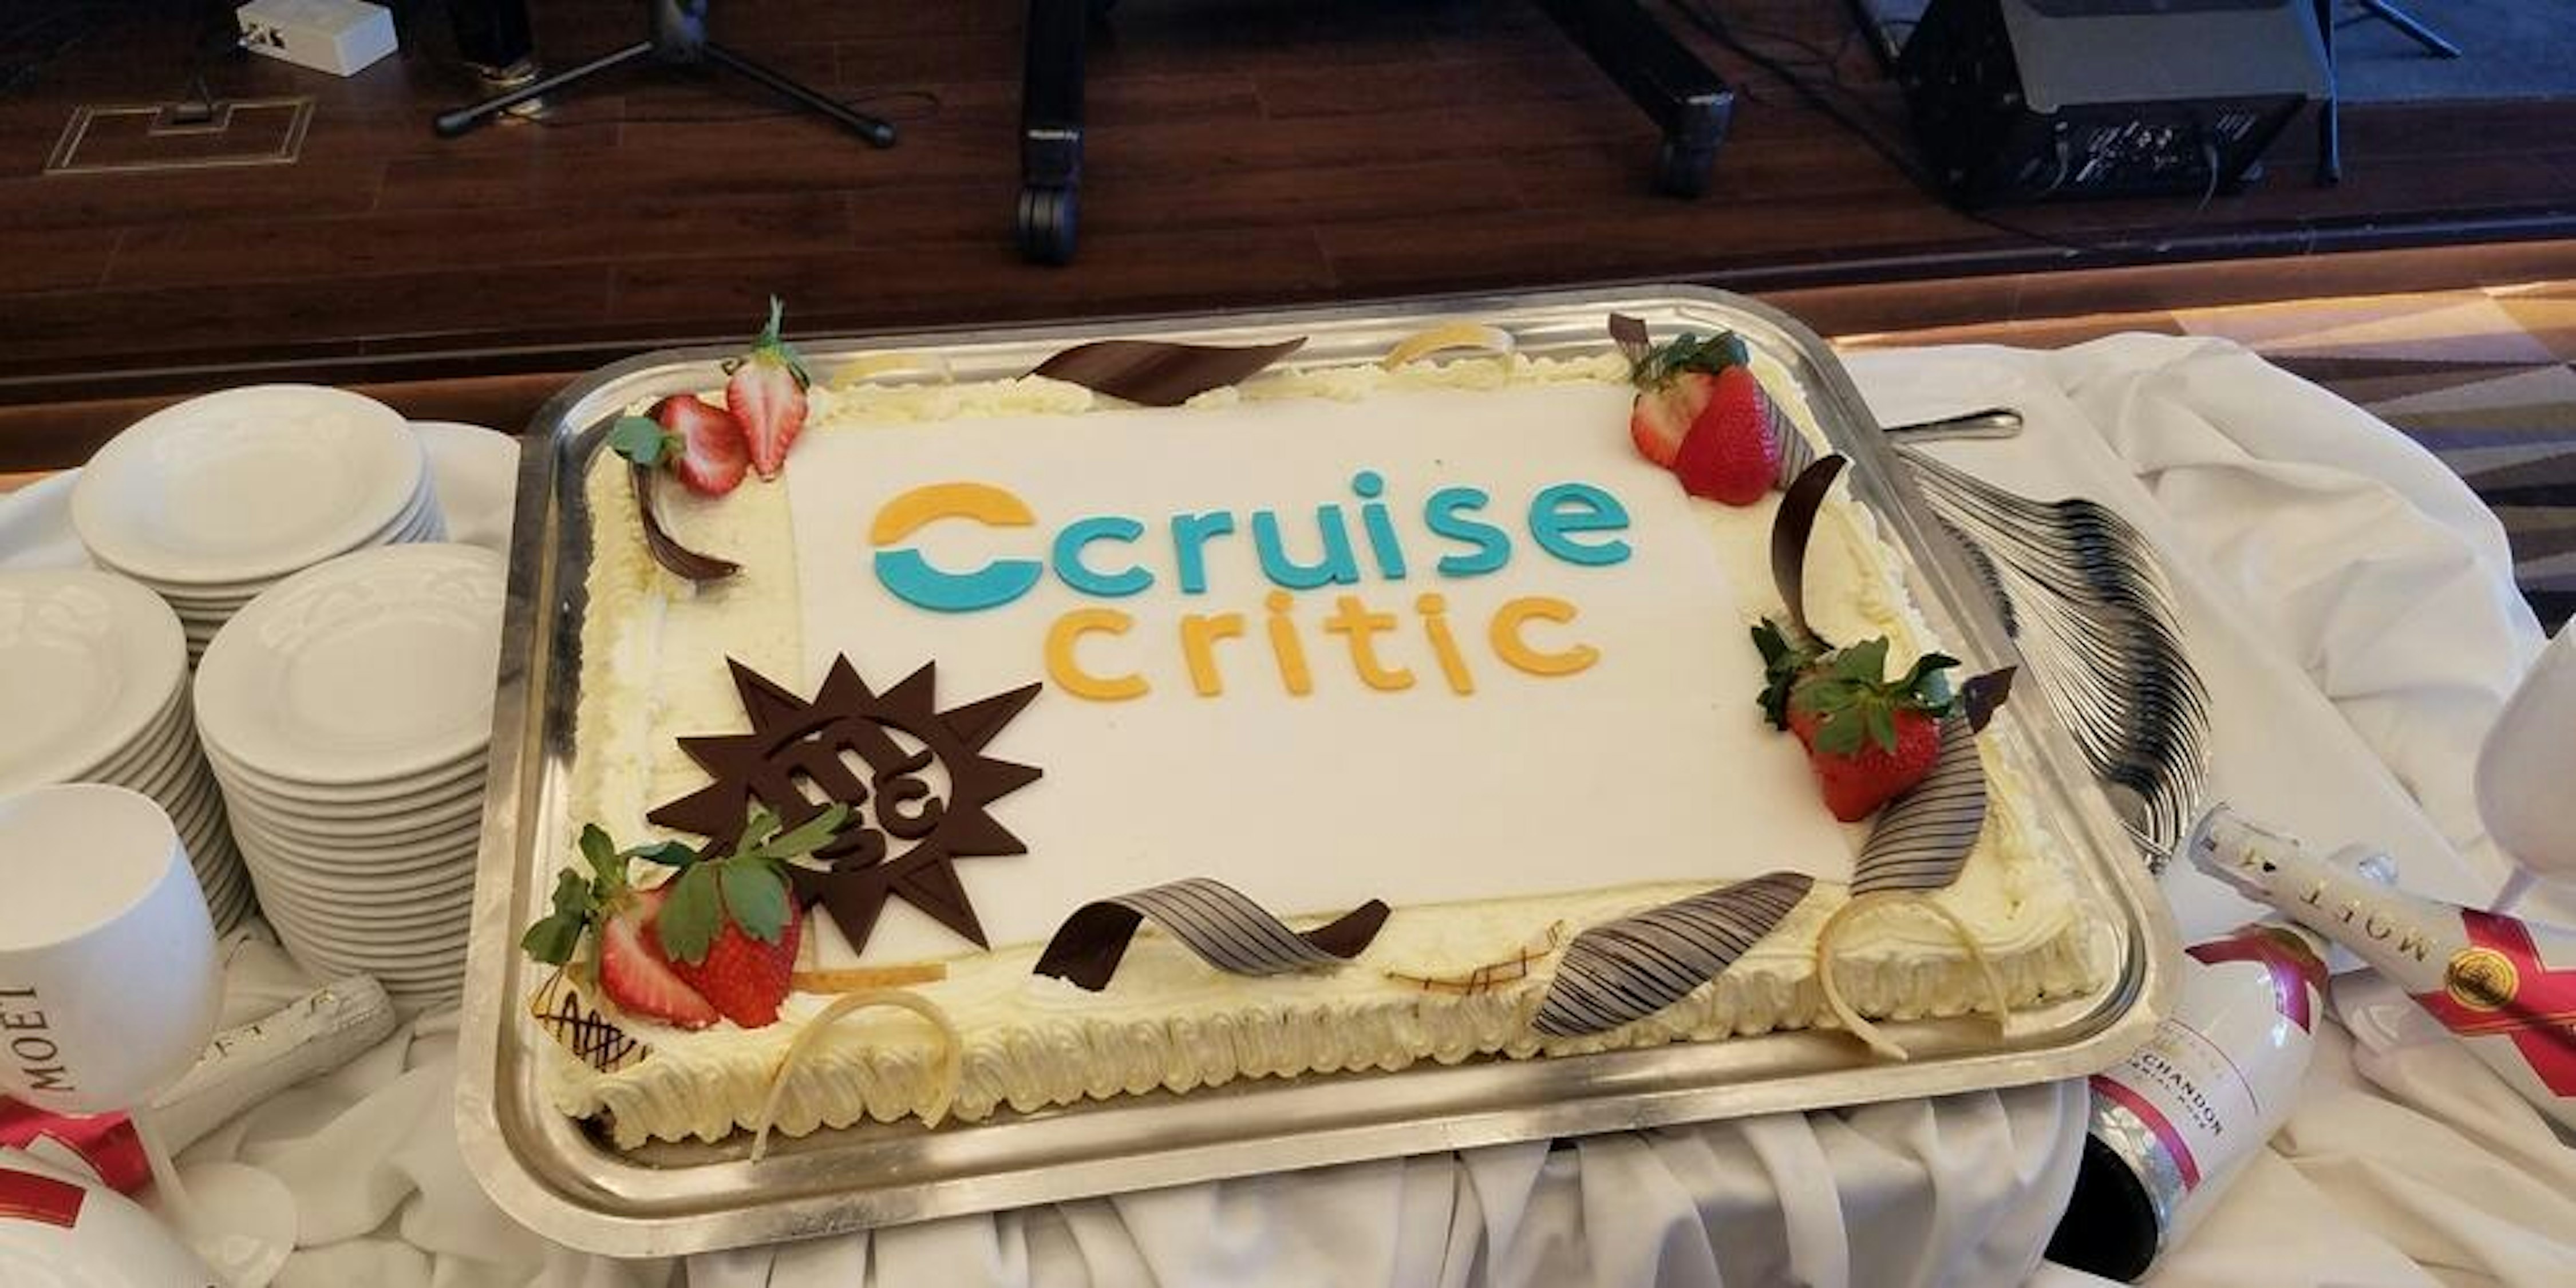 cruise critic bulletin board